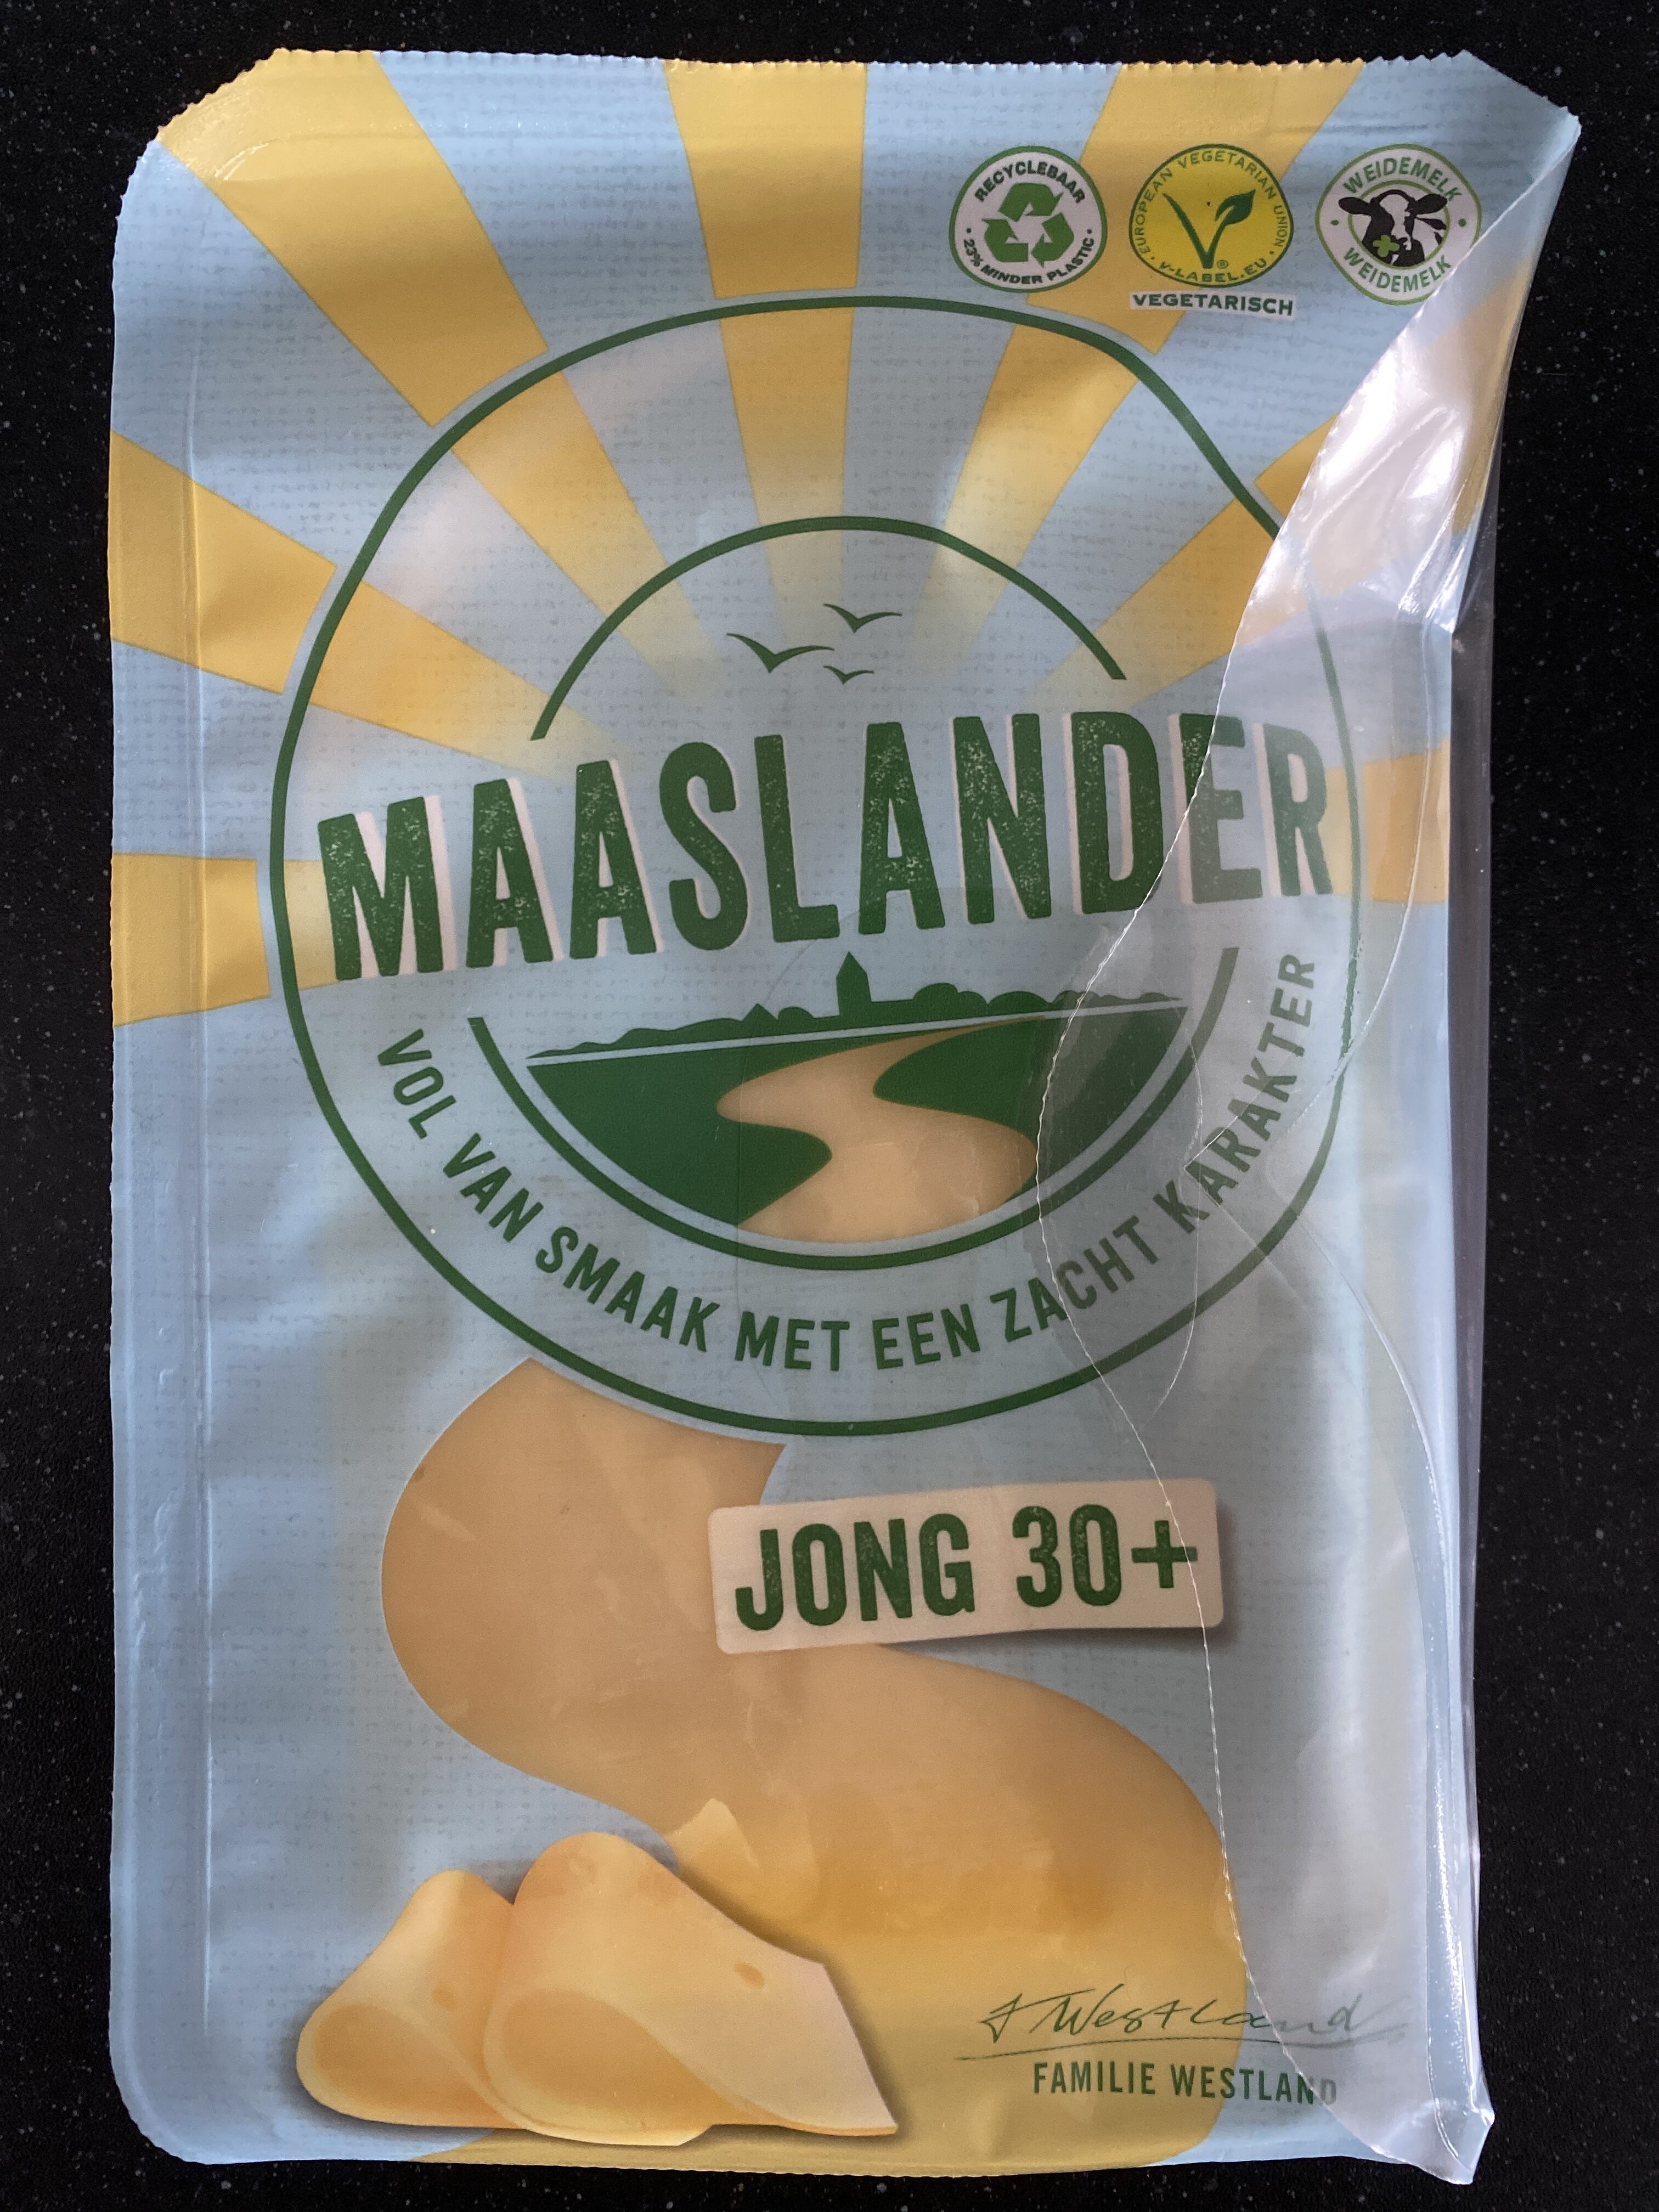 Maaslander jong 30+ - Product